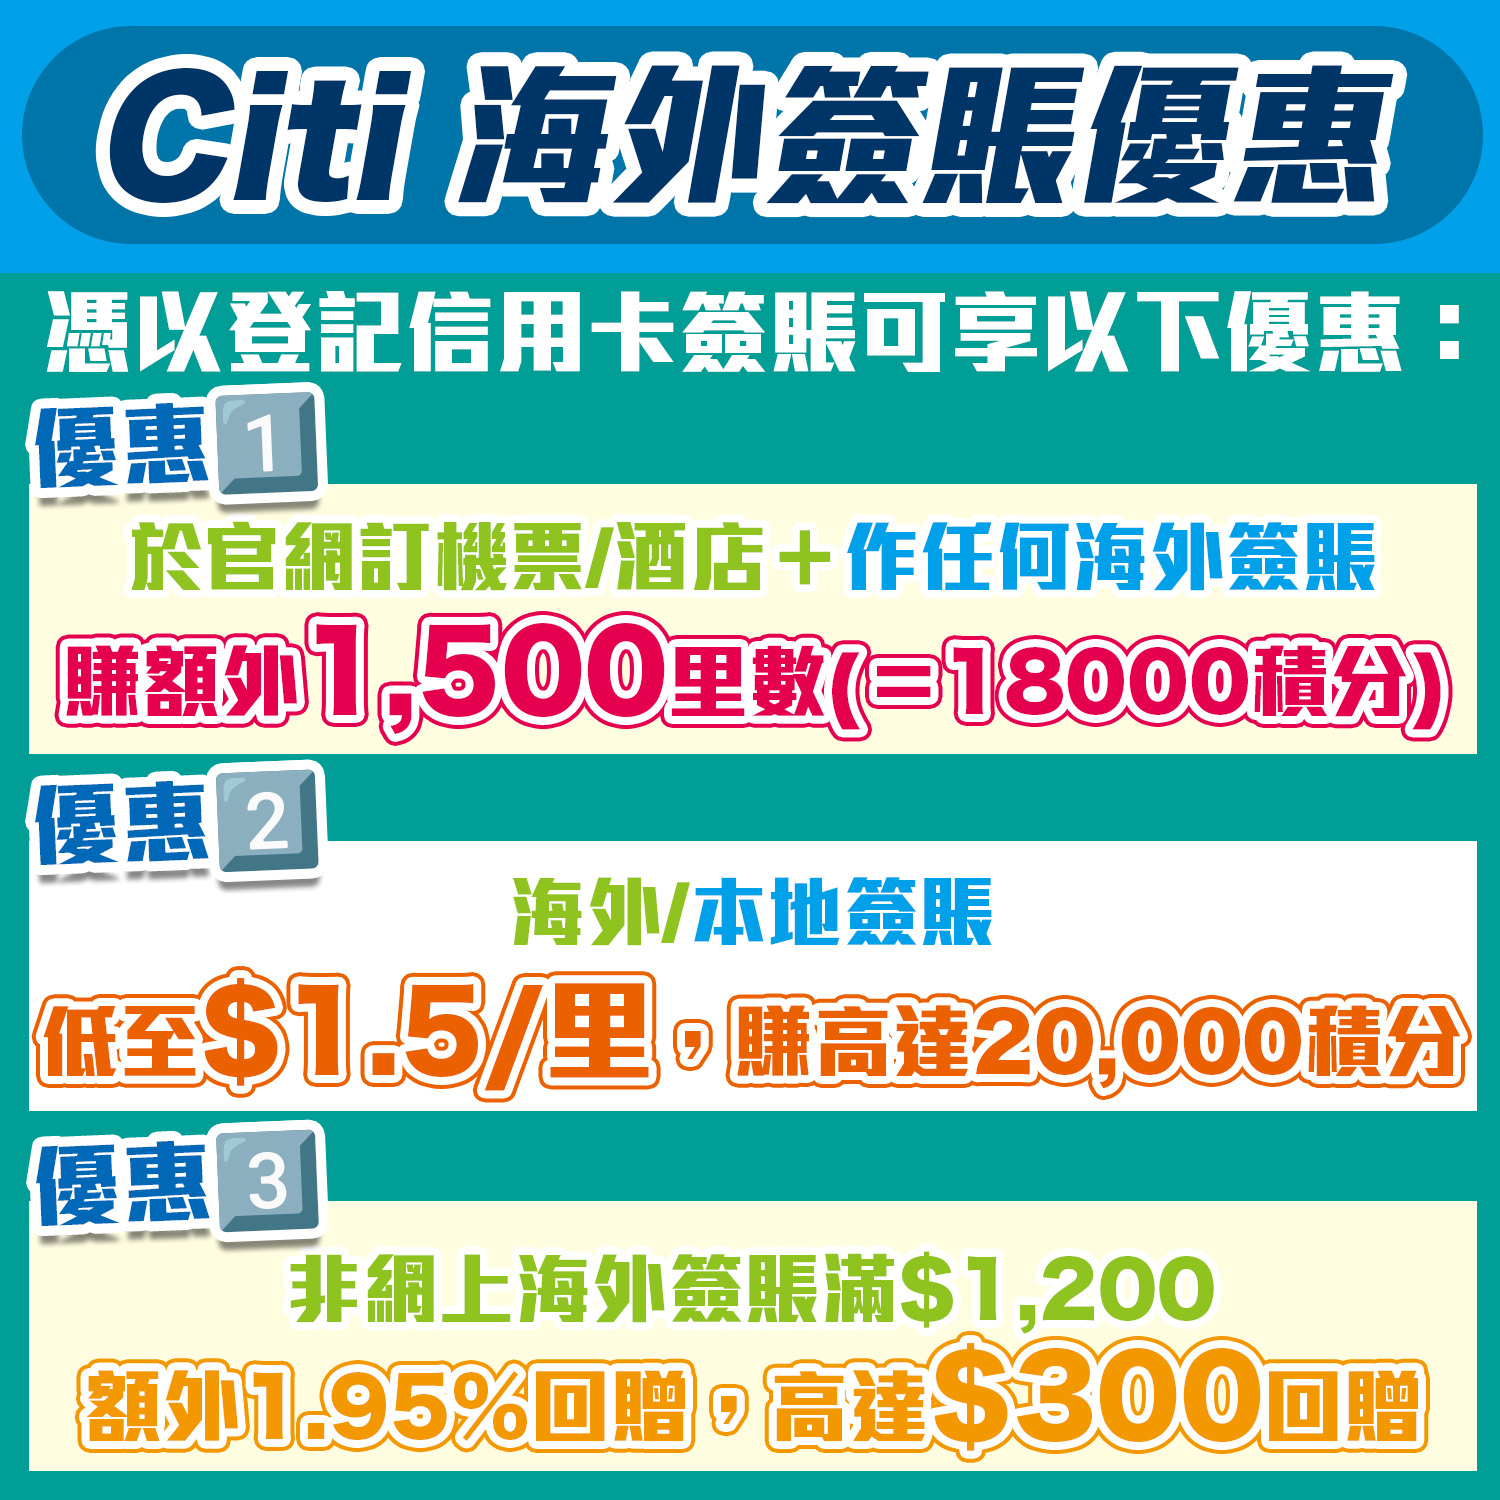 【Citi 海外簽賬優惠】Citi信用卡外幣簽賬、本地簽賬、訂機票/酒店可賺合共額外高達21,500里＋HK$300現金回贈